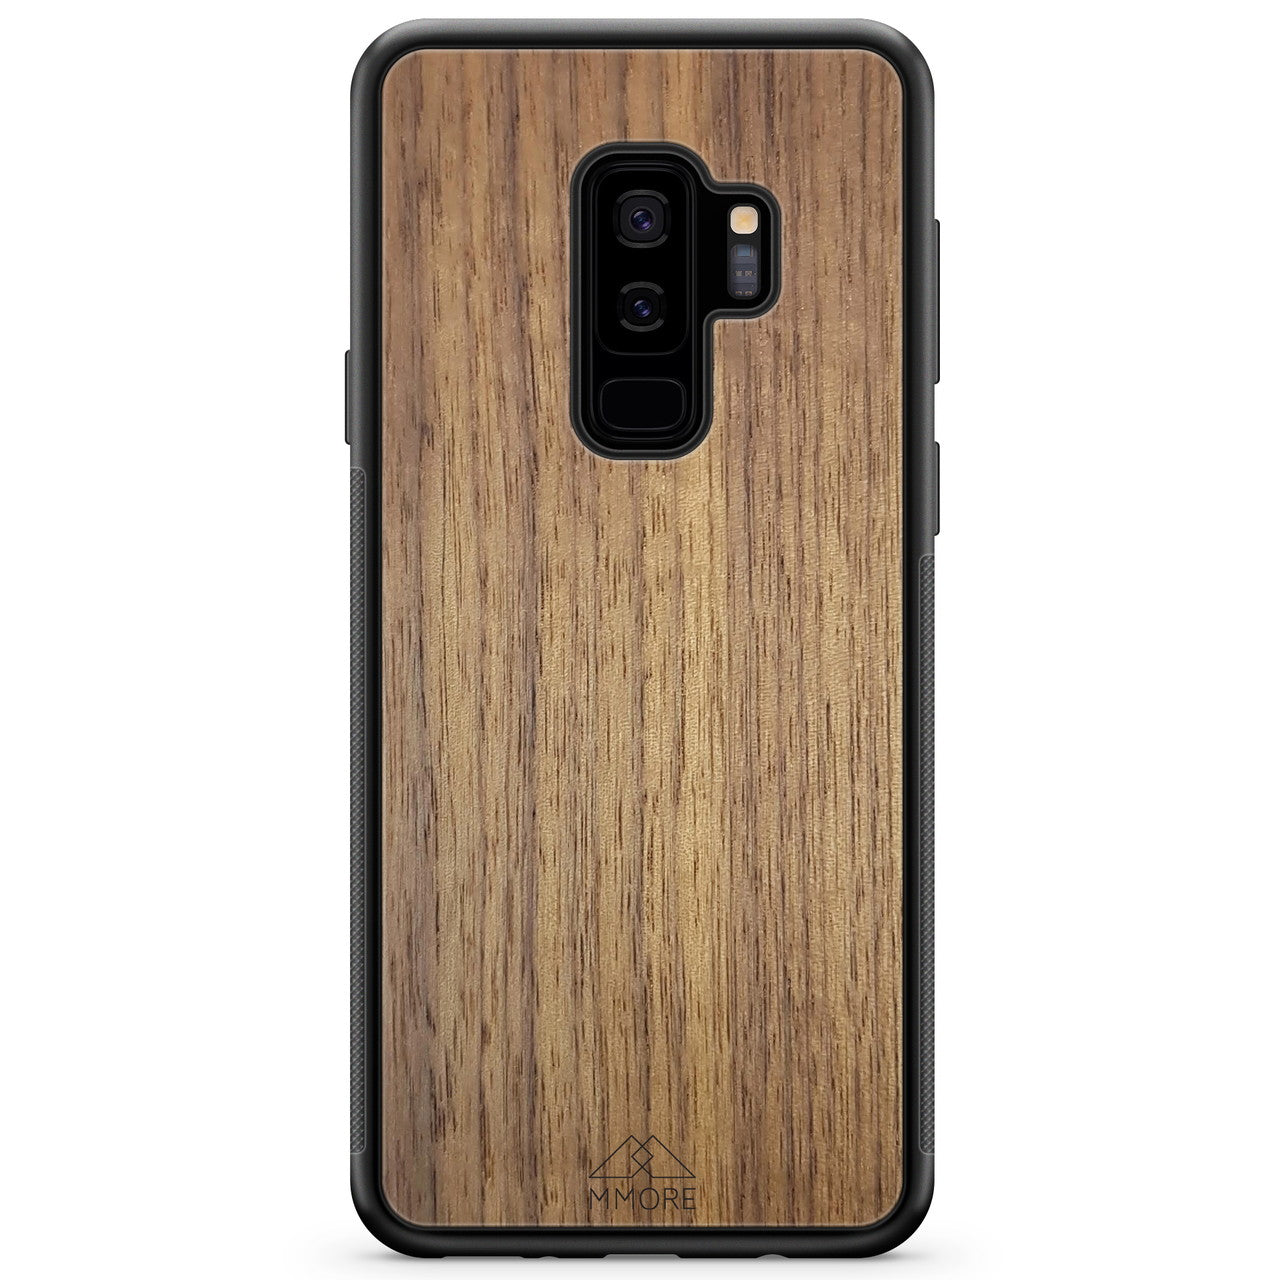 Custodia per cellulare Samsung S9 Plus in legno di noce americano